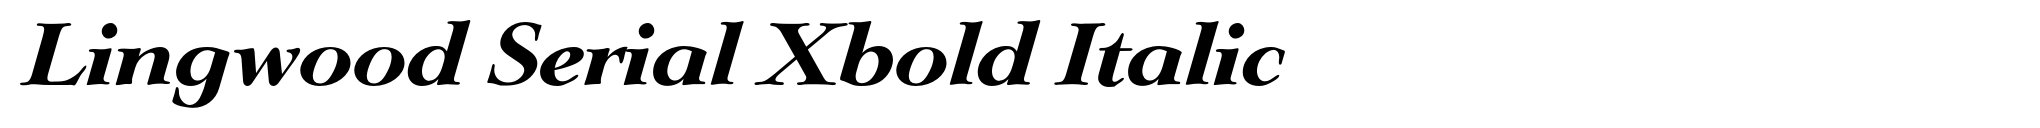 Lingwood Serial Xbold Italic image